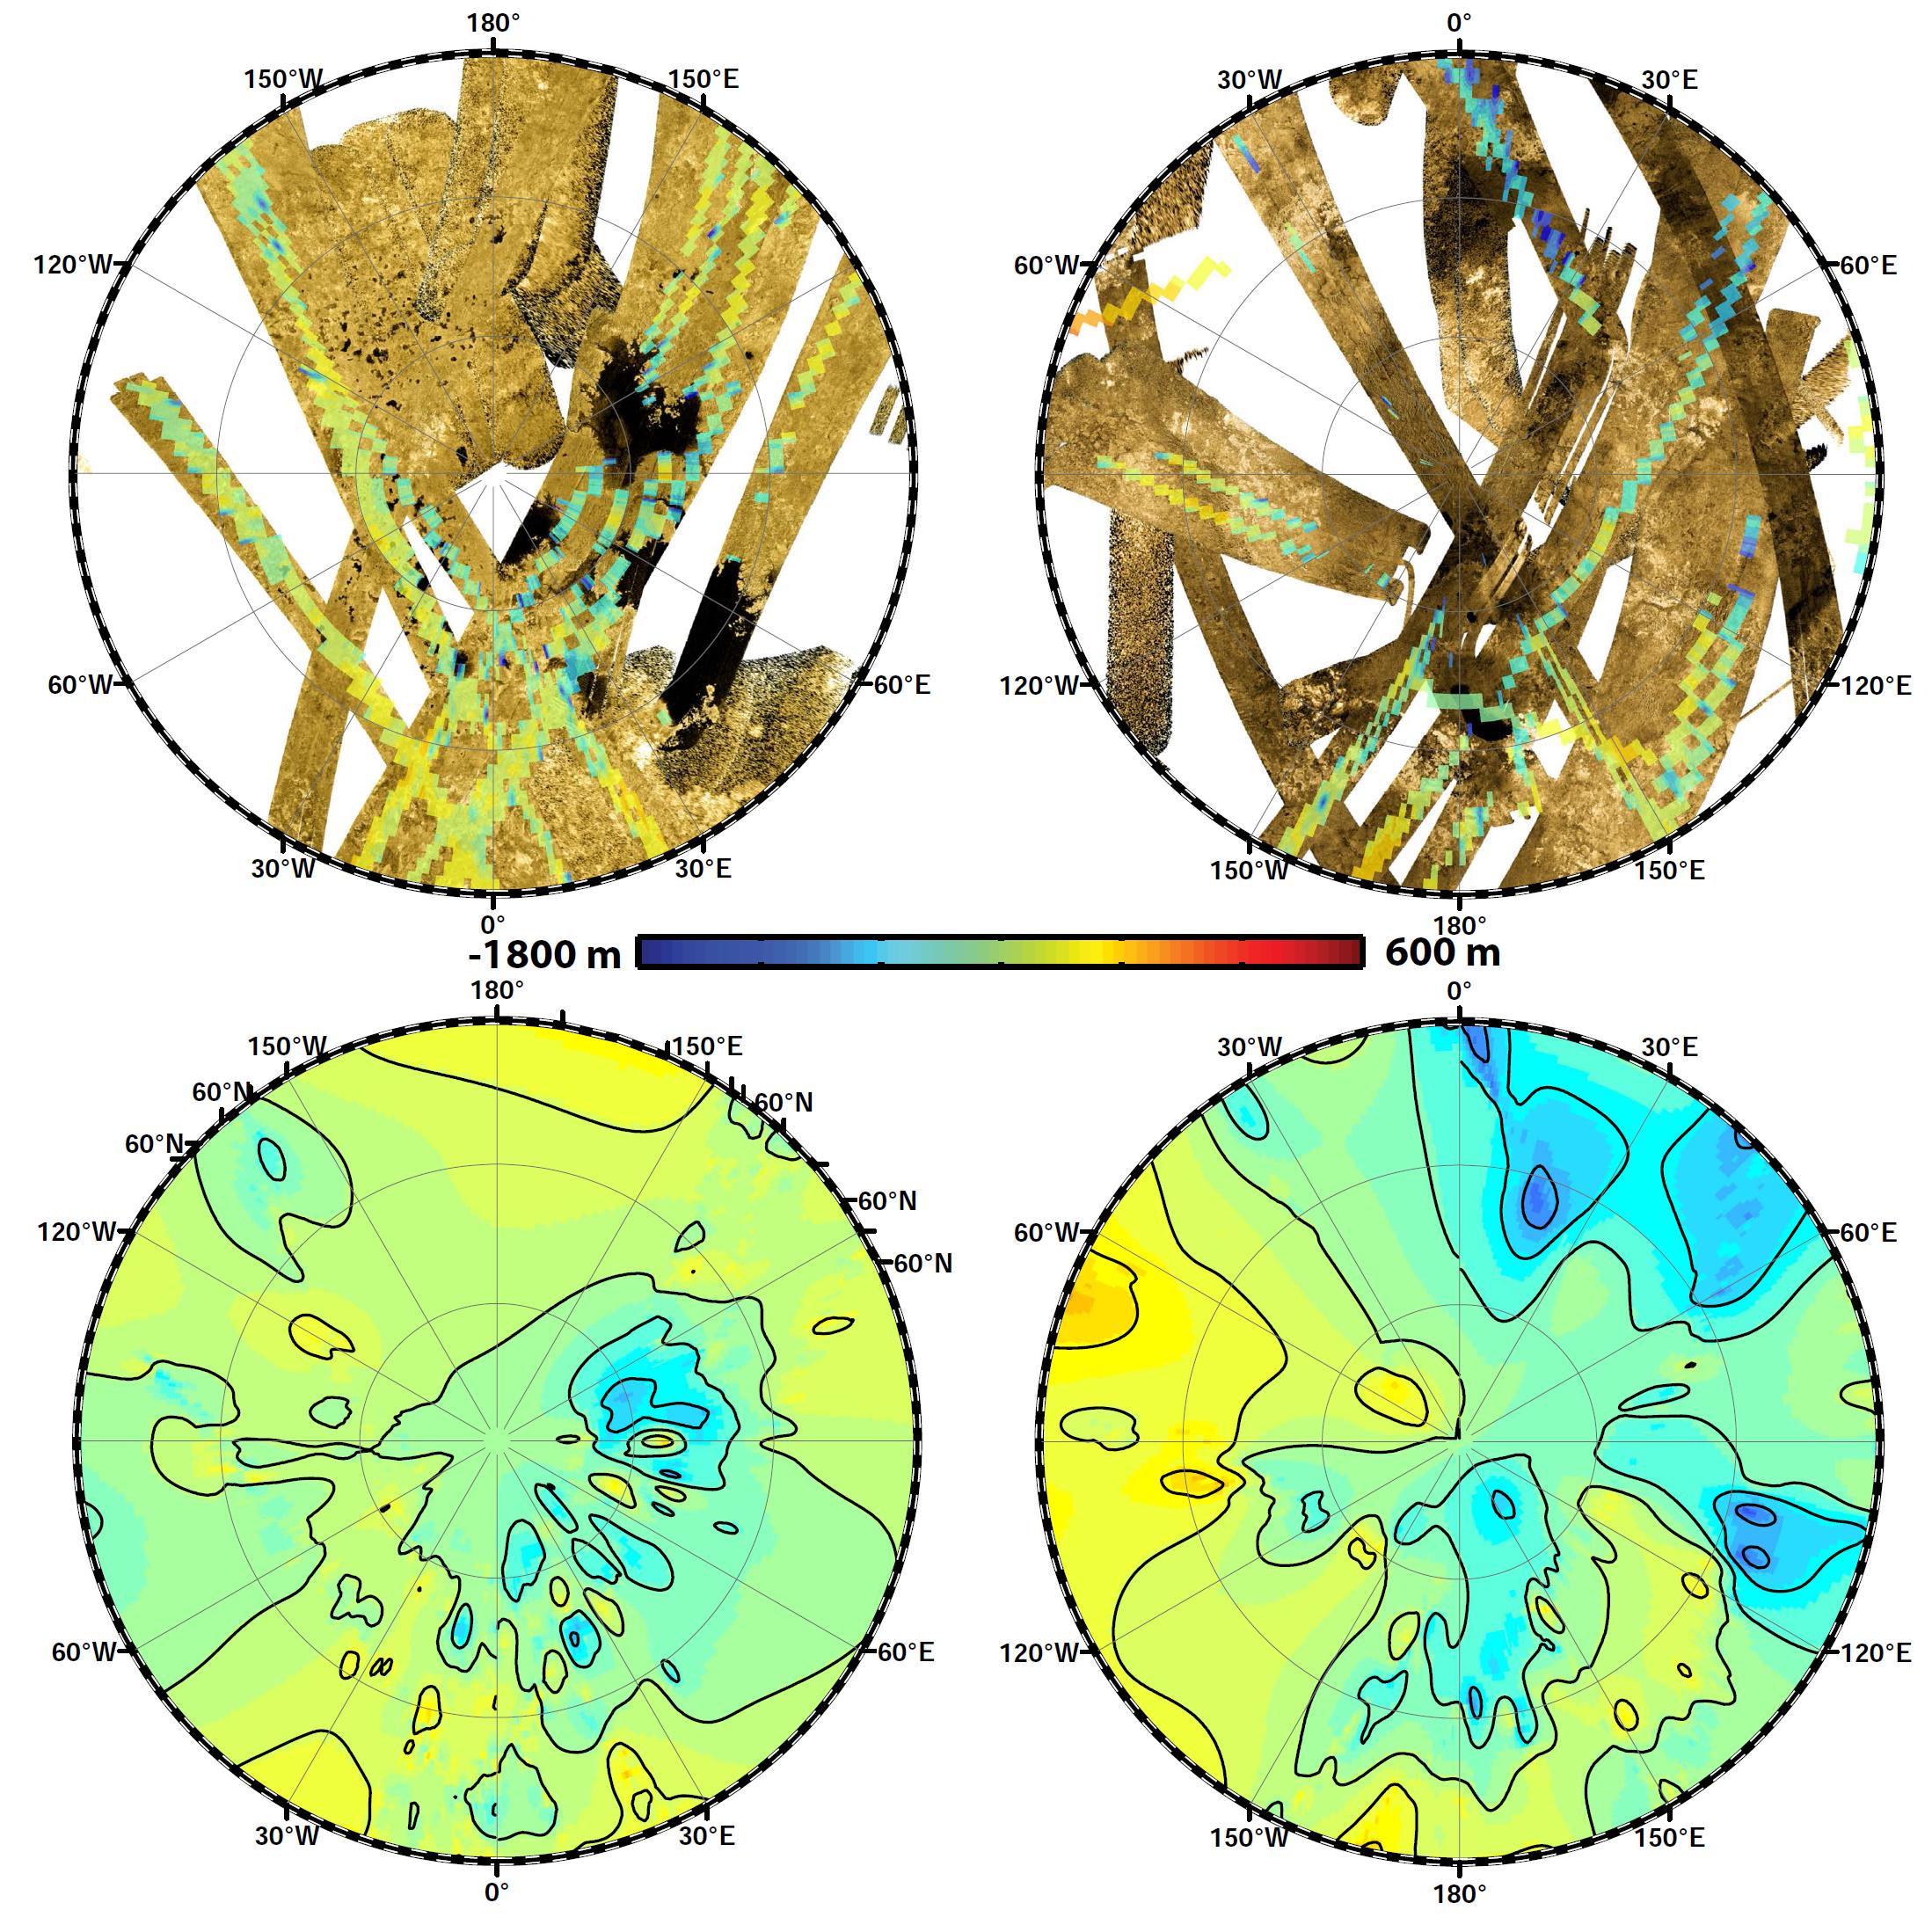 Polar maps of Titan